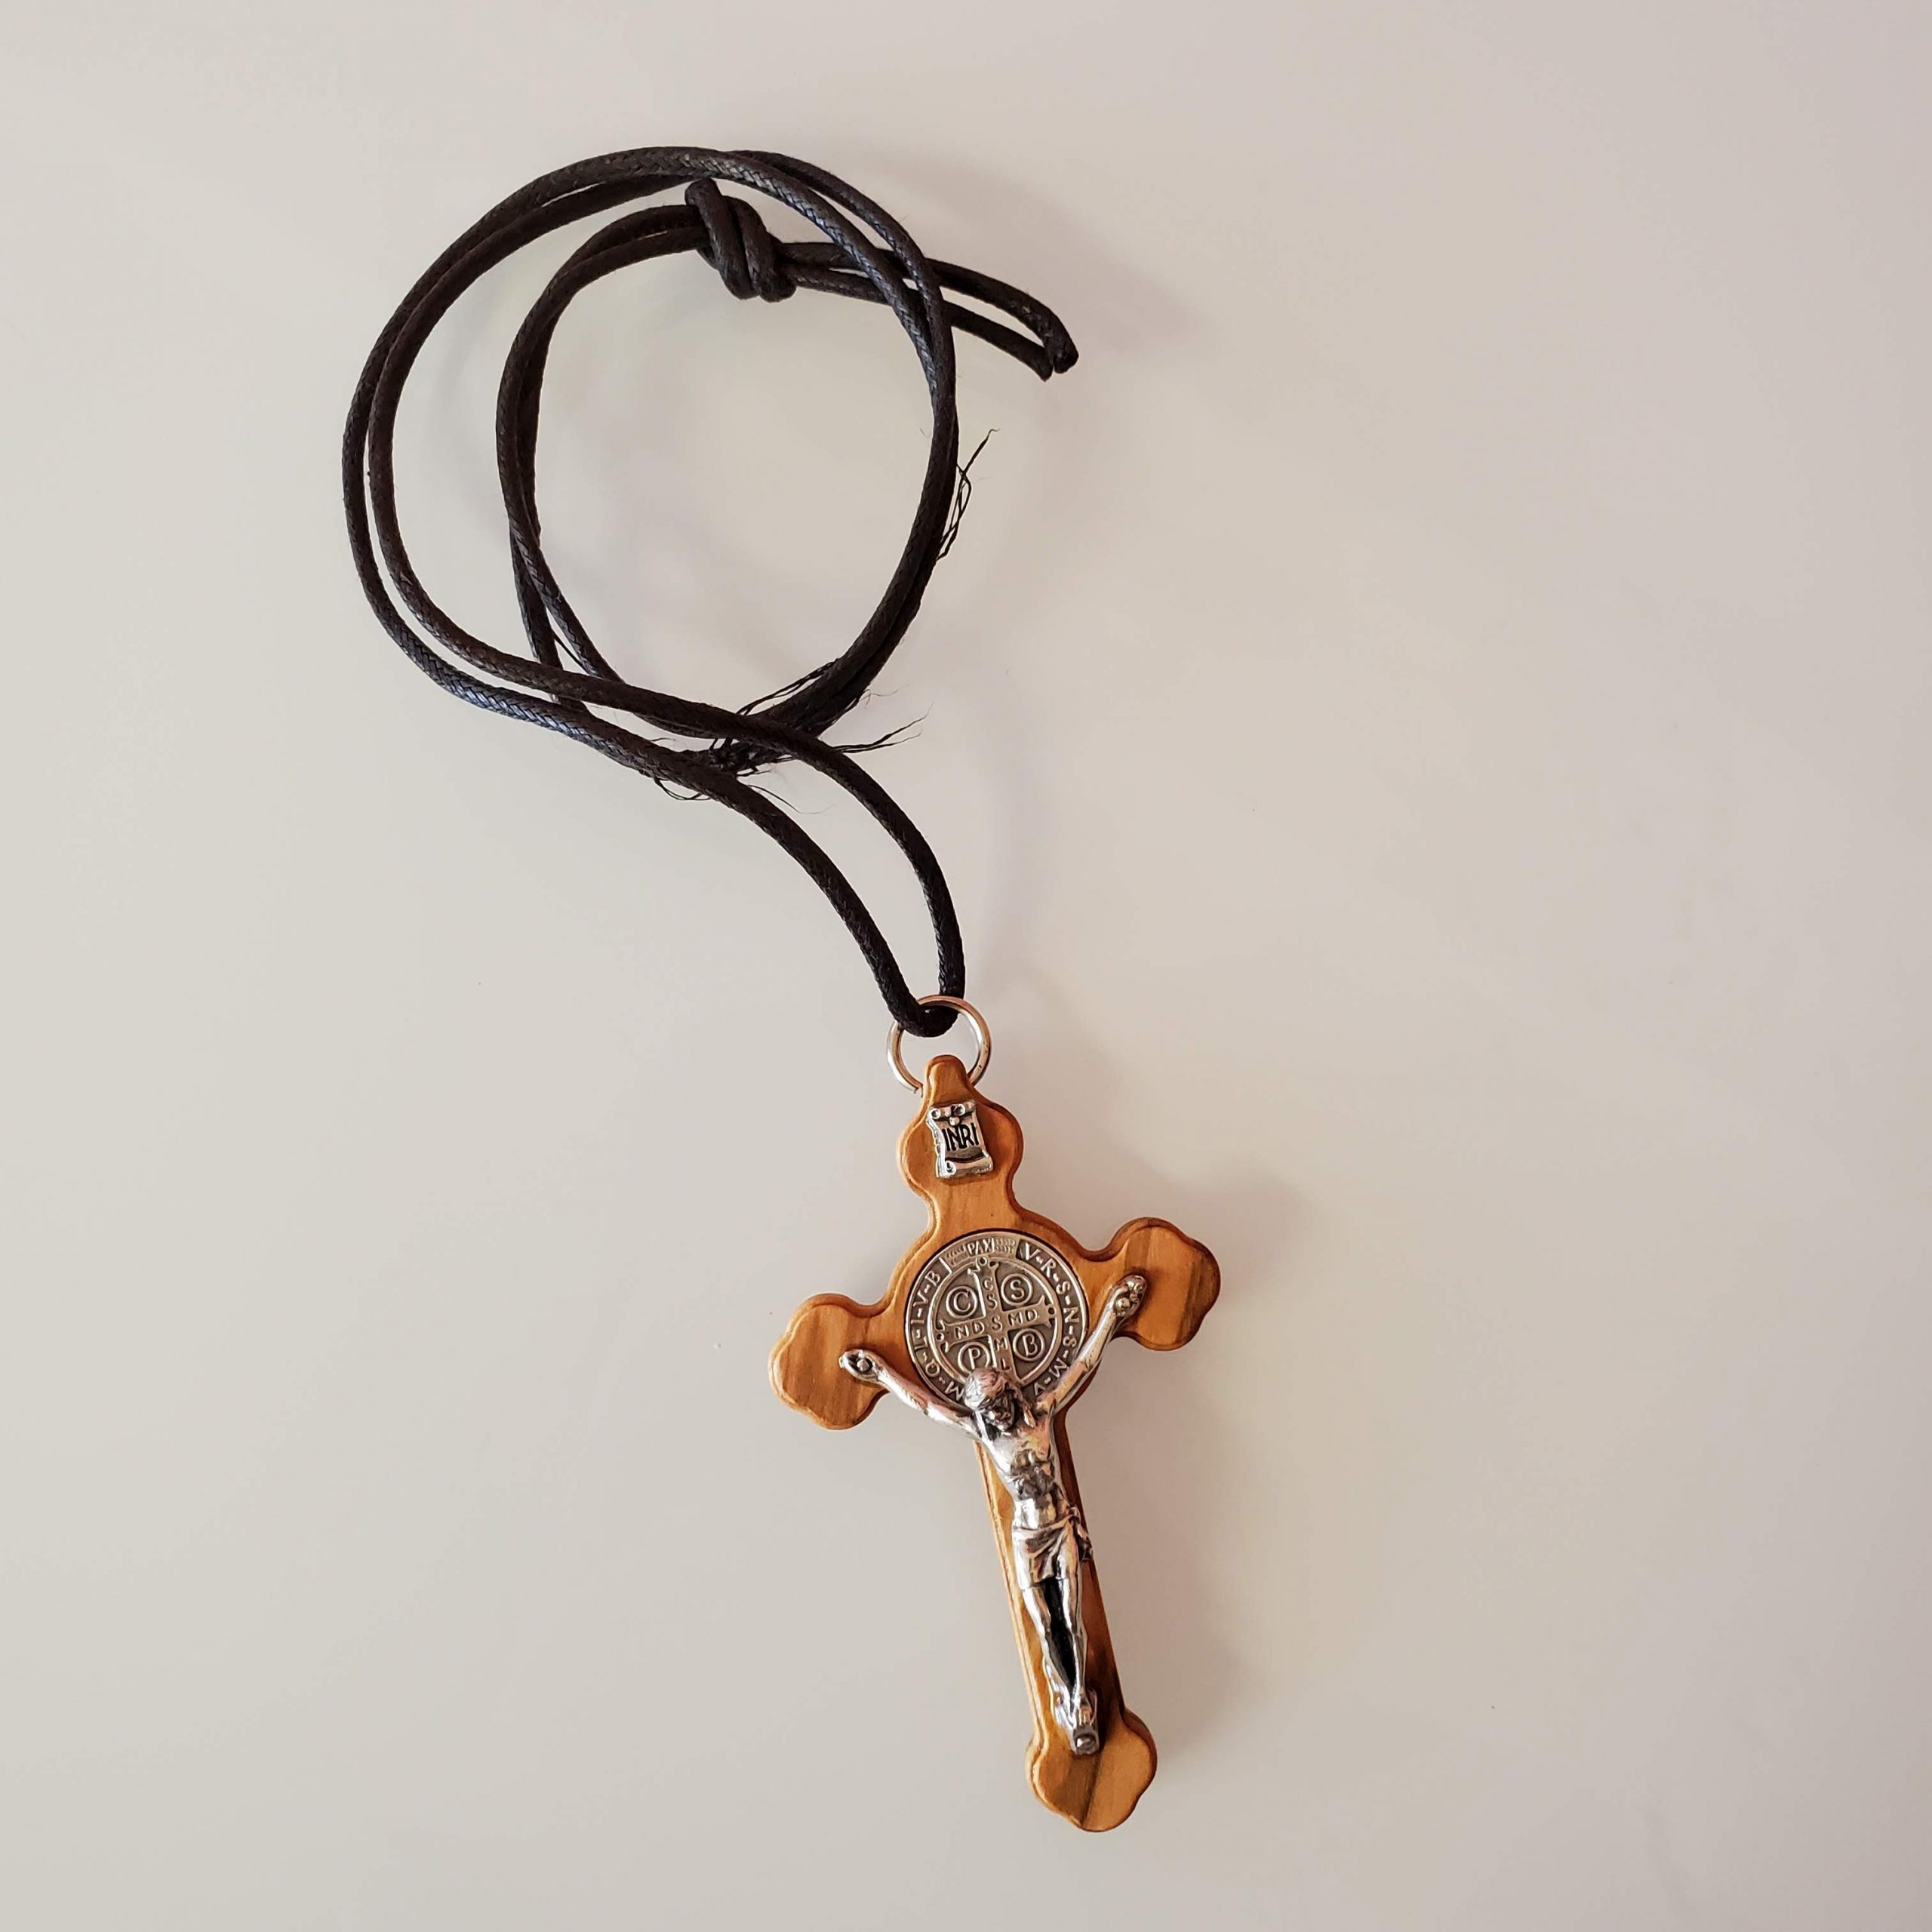 Buy 2pcs Olive Wood Cross Jesus Name Pendant Necklace Holy Land Bethlehem  Hand Made Online in India - Etsy